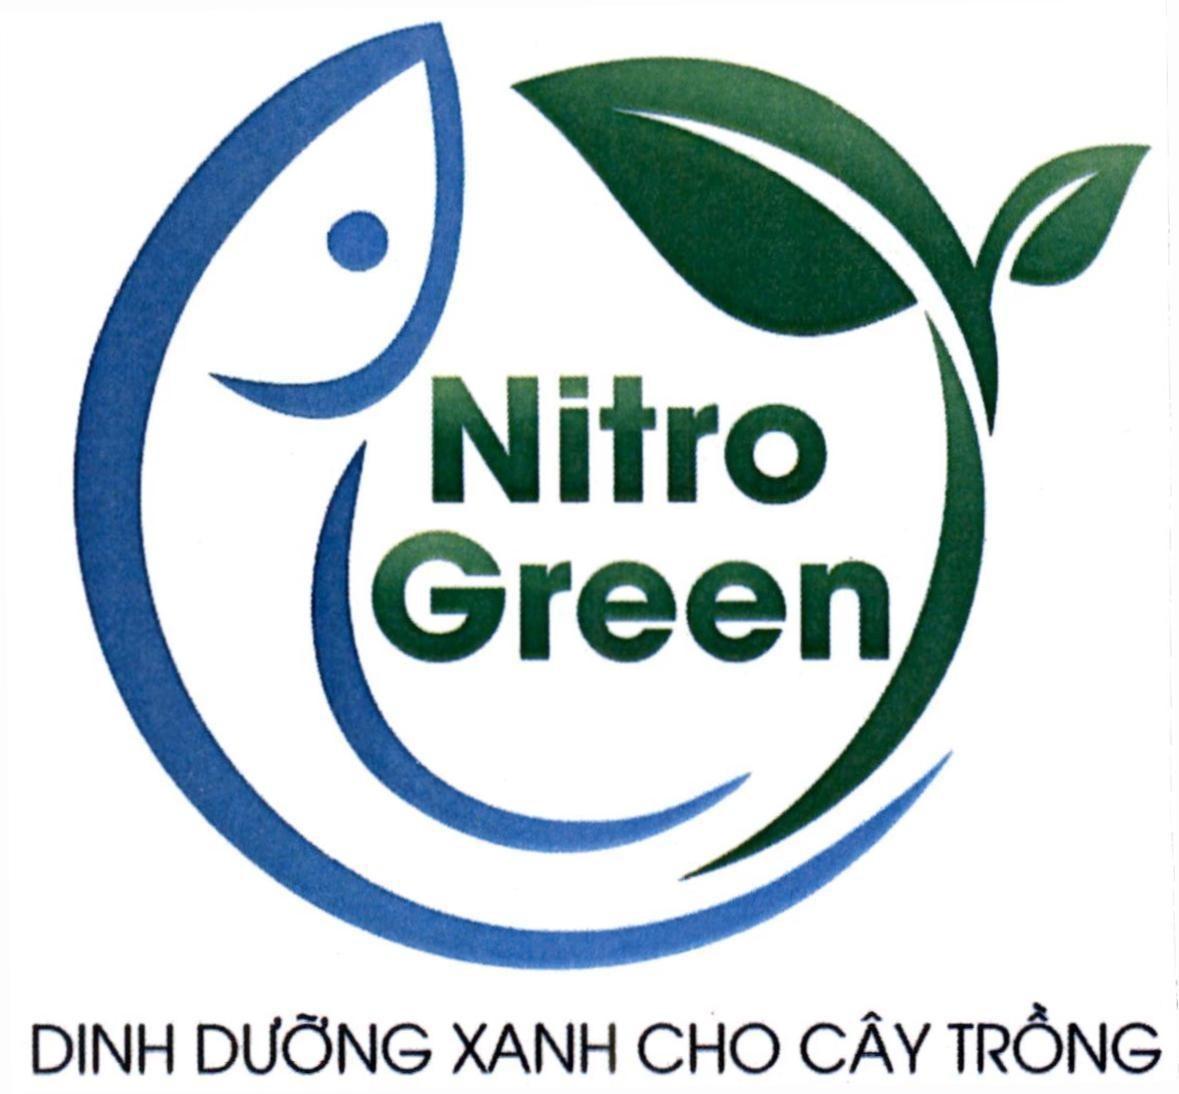 Nitro Green DINH DƯỠNG XANH CHO CÂY TRỒNG